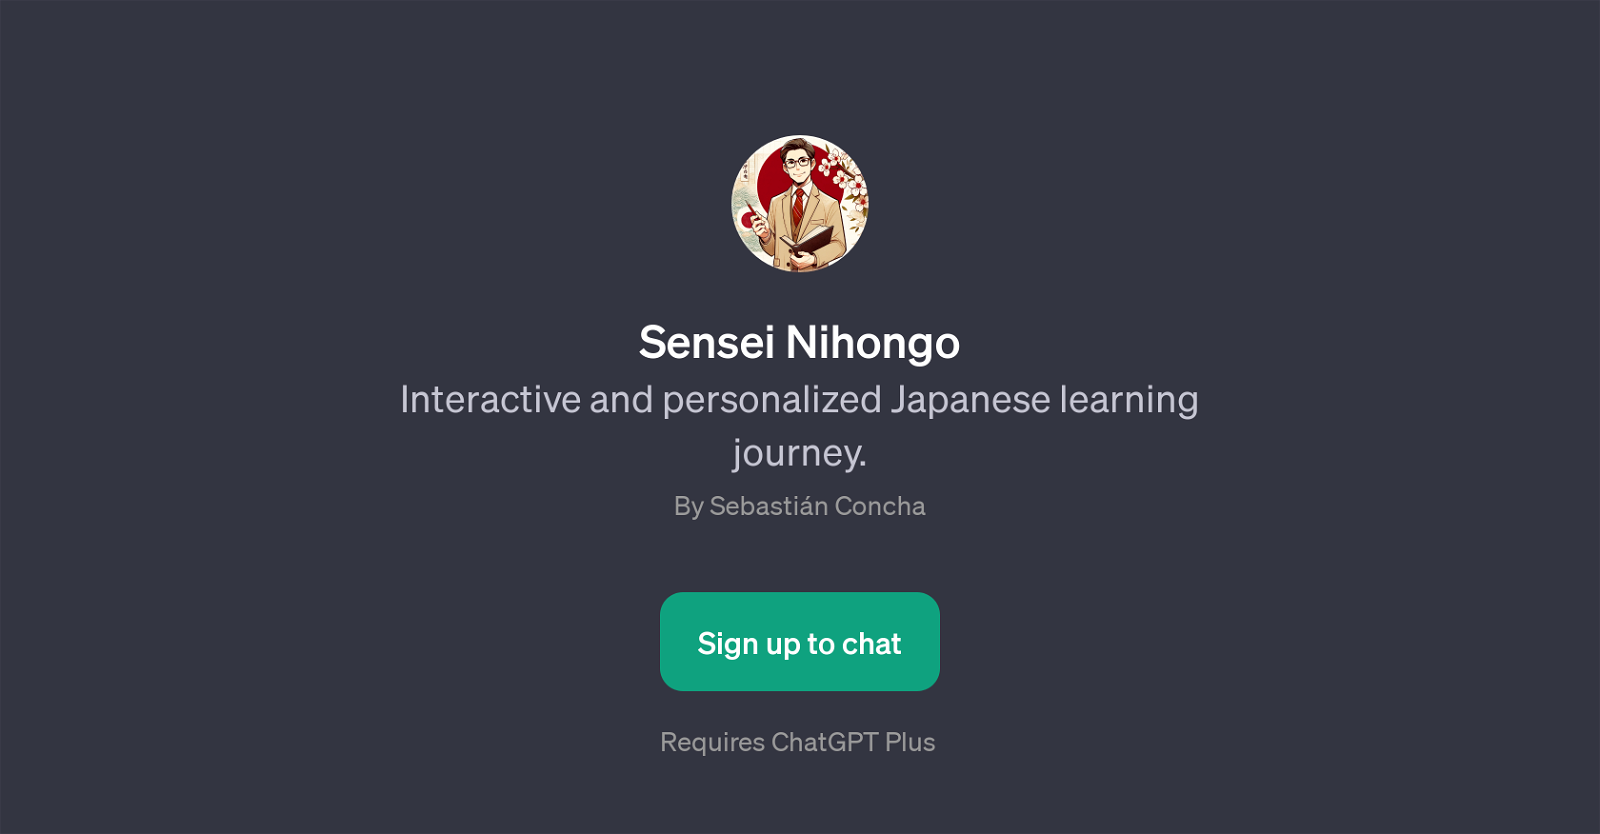 Sensei Nihongo website